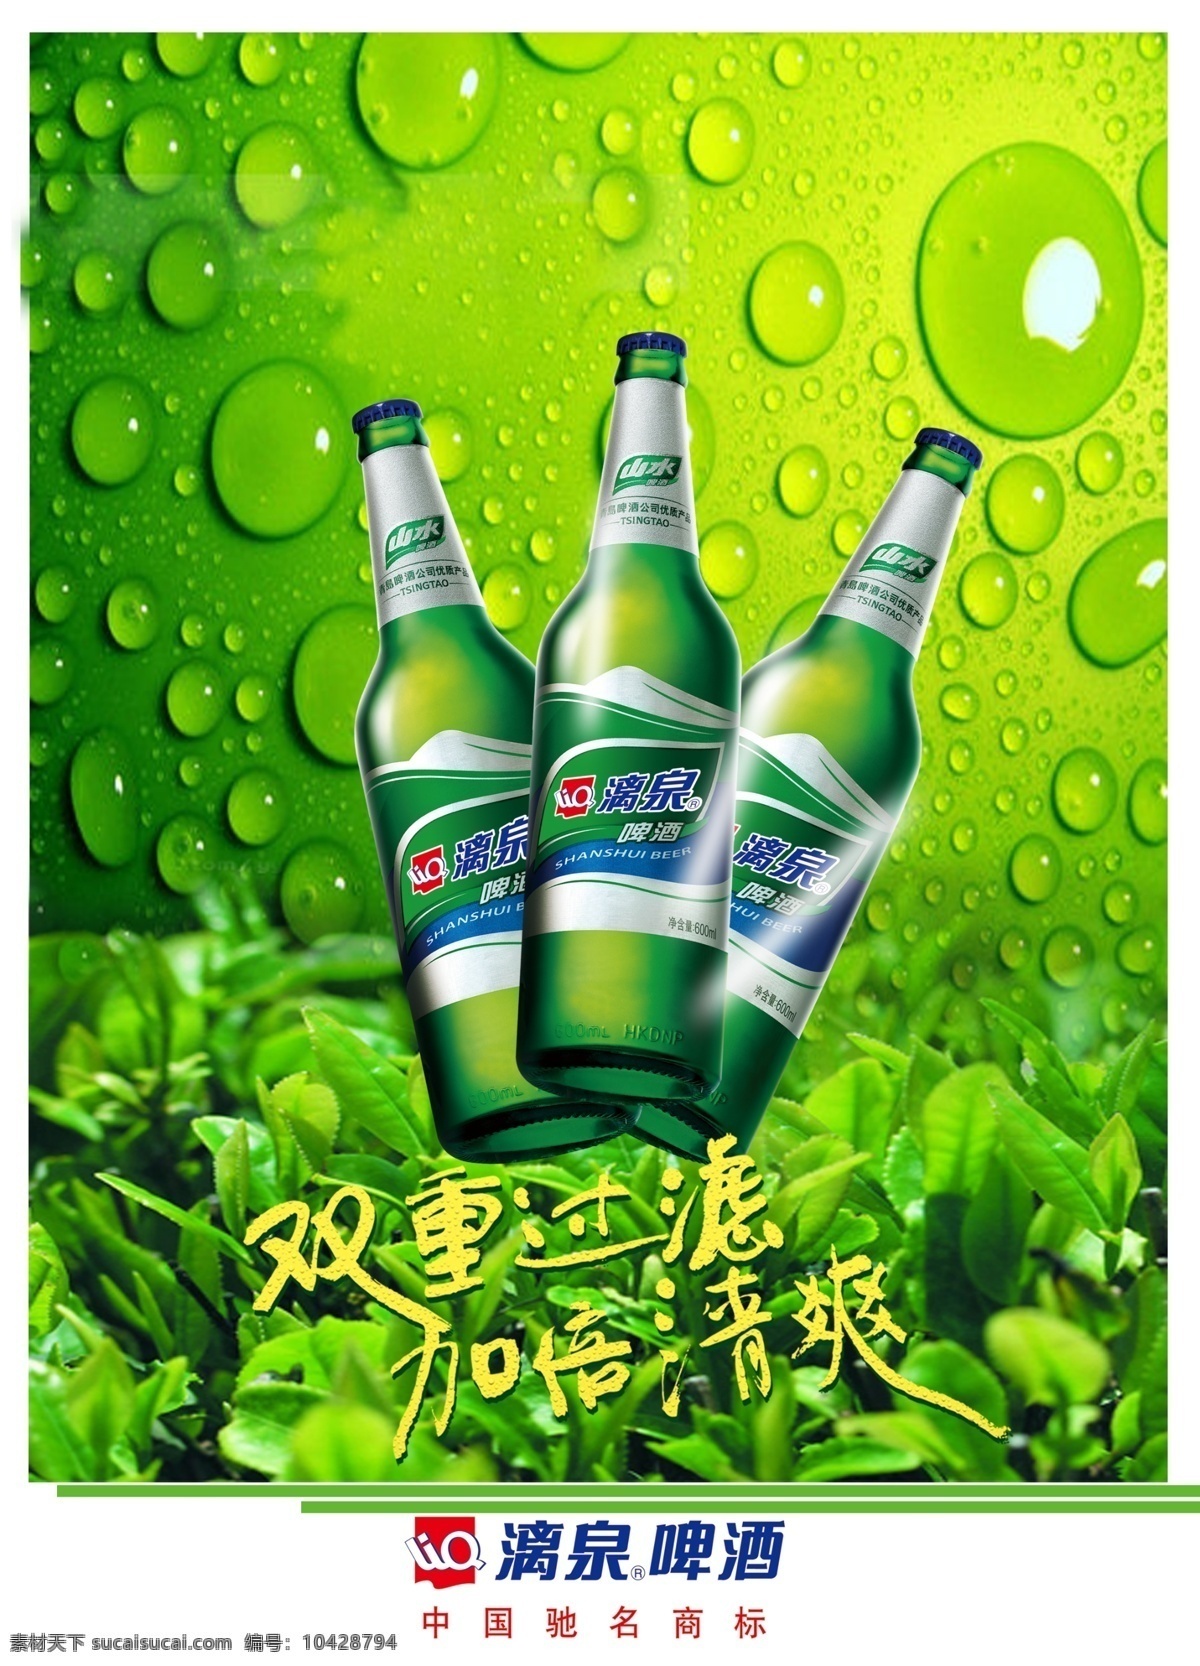 漓泉啤酒 啤酒 漓泉 叶子 晶莹剔透 水珠 绿色背景 广告设计模板 源文件